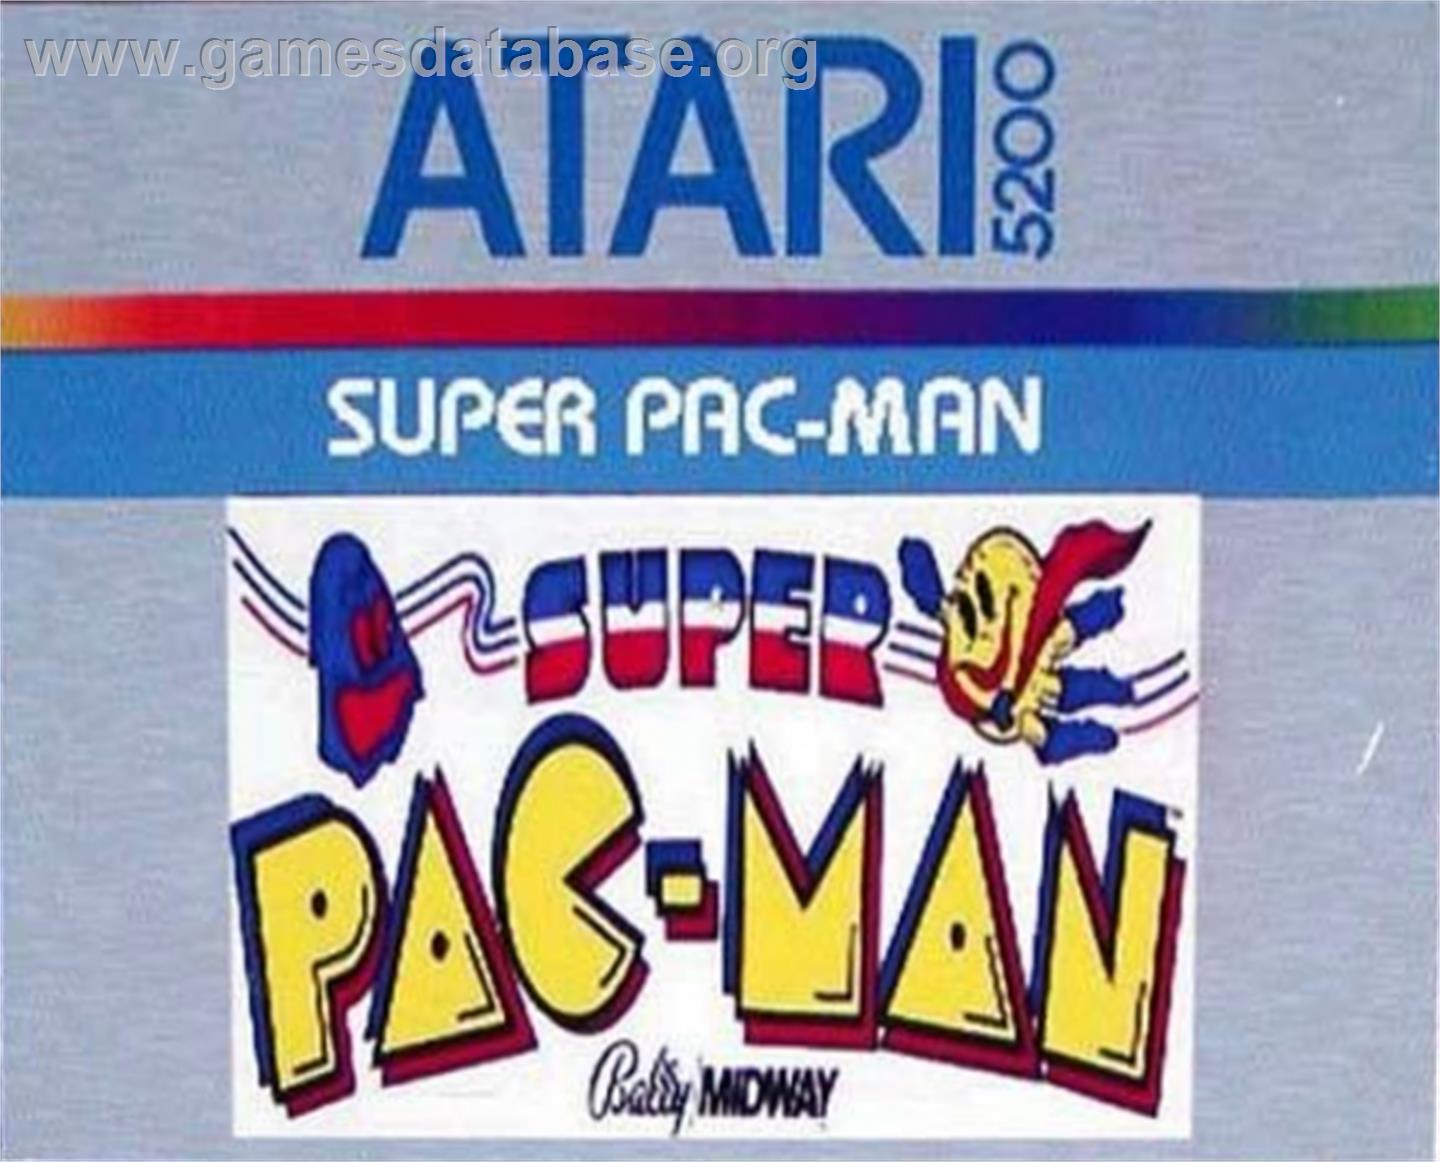 Super Pac-Man - Atari 5200 - Artwork - Cartridge Top